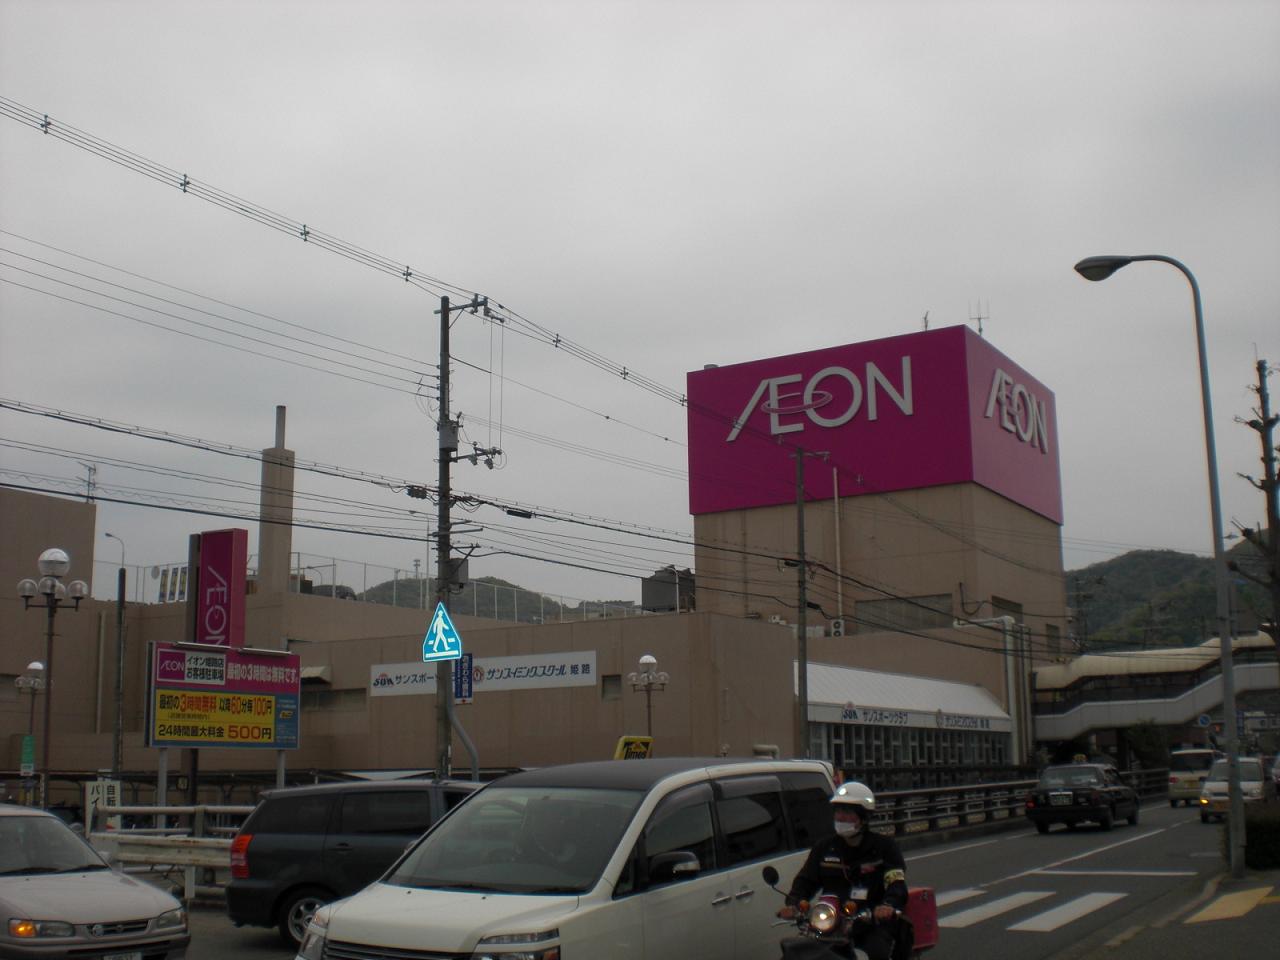 Shopping centre. AEON (shopping center) to 200m